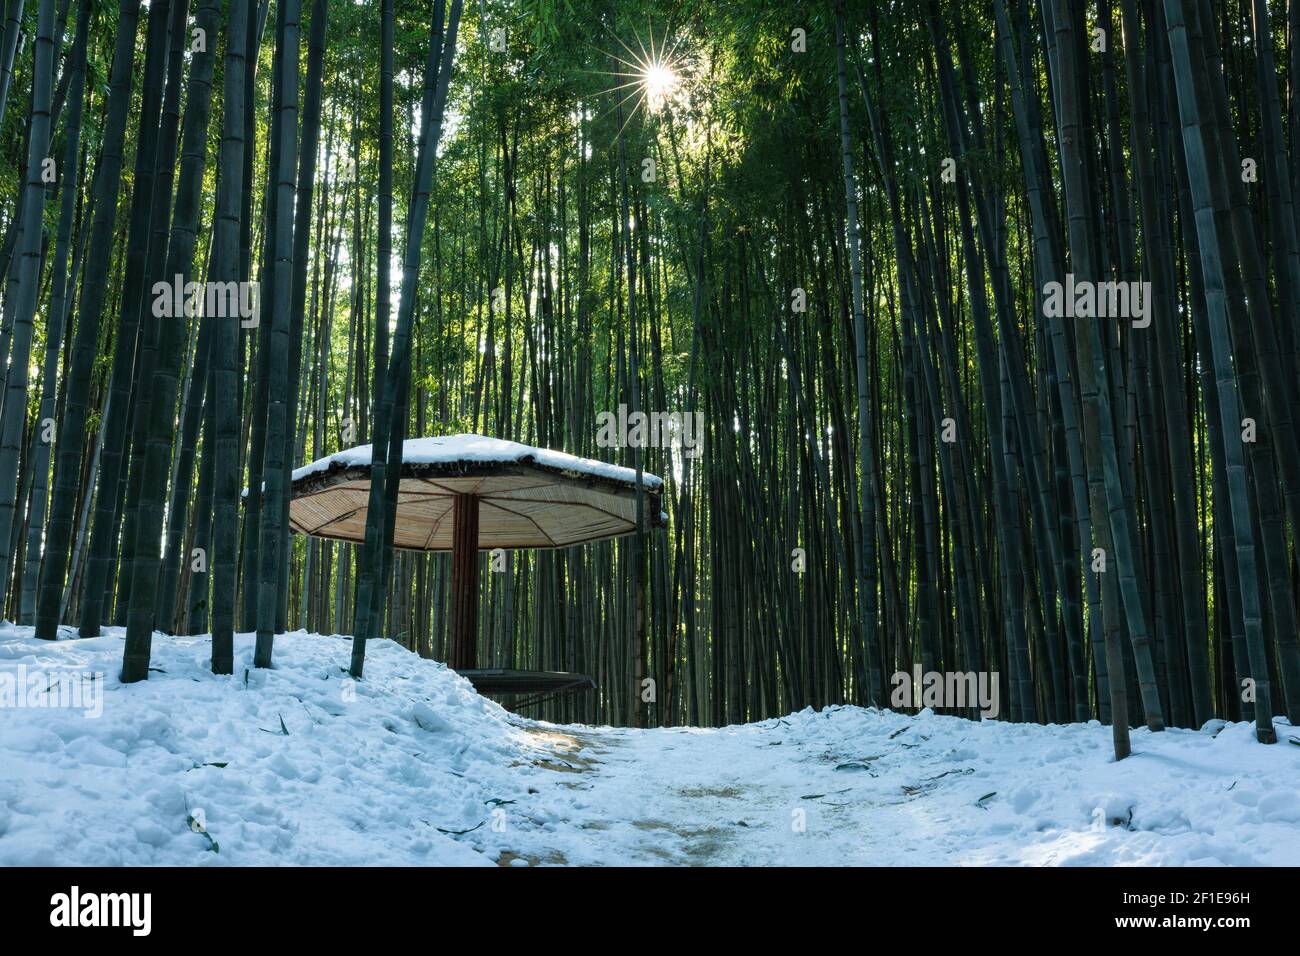 Una foresta di bambù innevata illuminata dal sole, uno splendido paesaggio invernale in Corea. Foto Stock